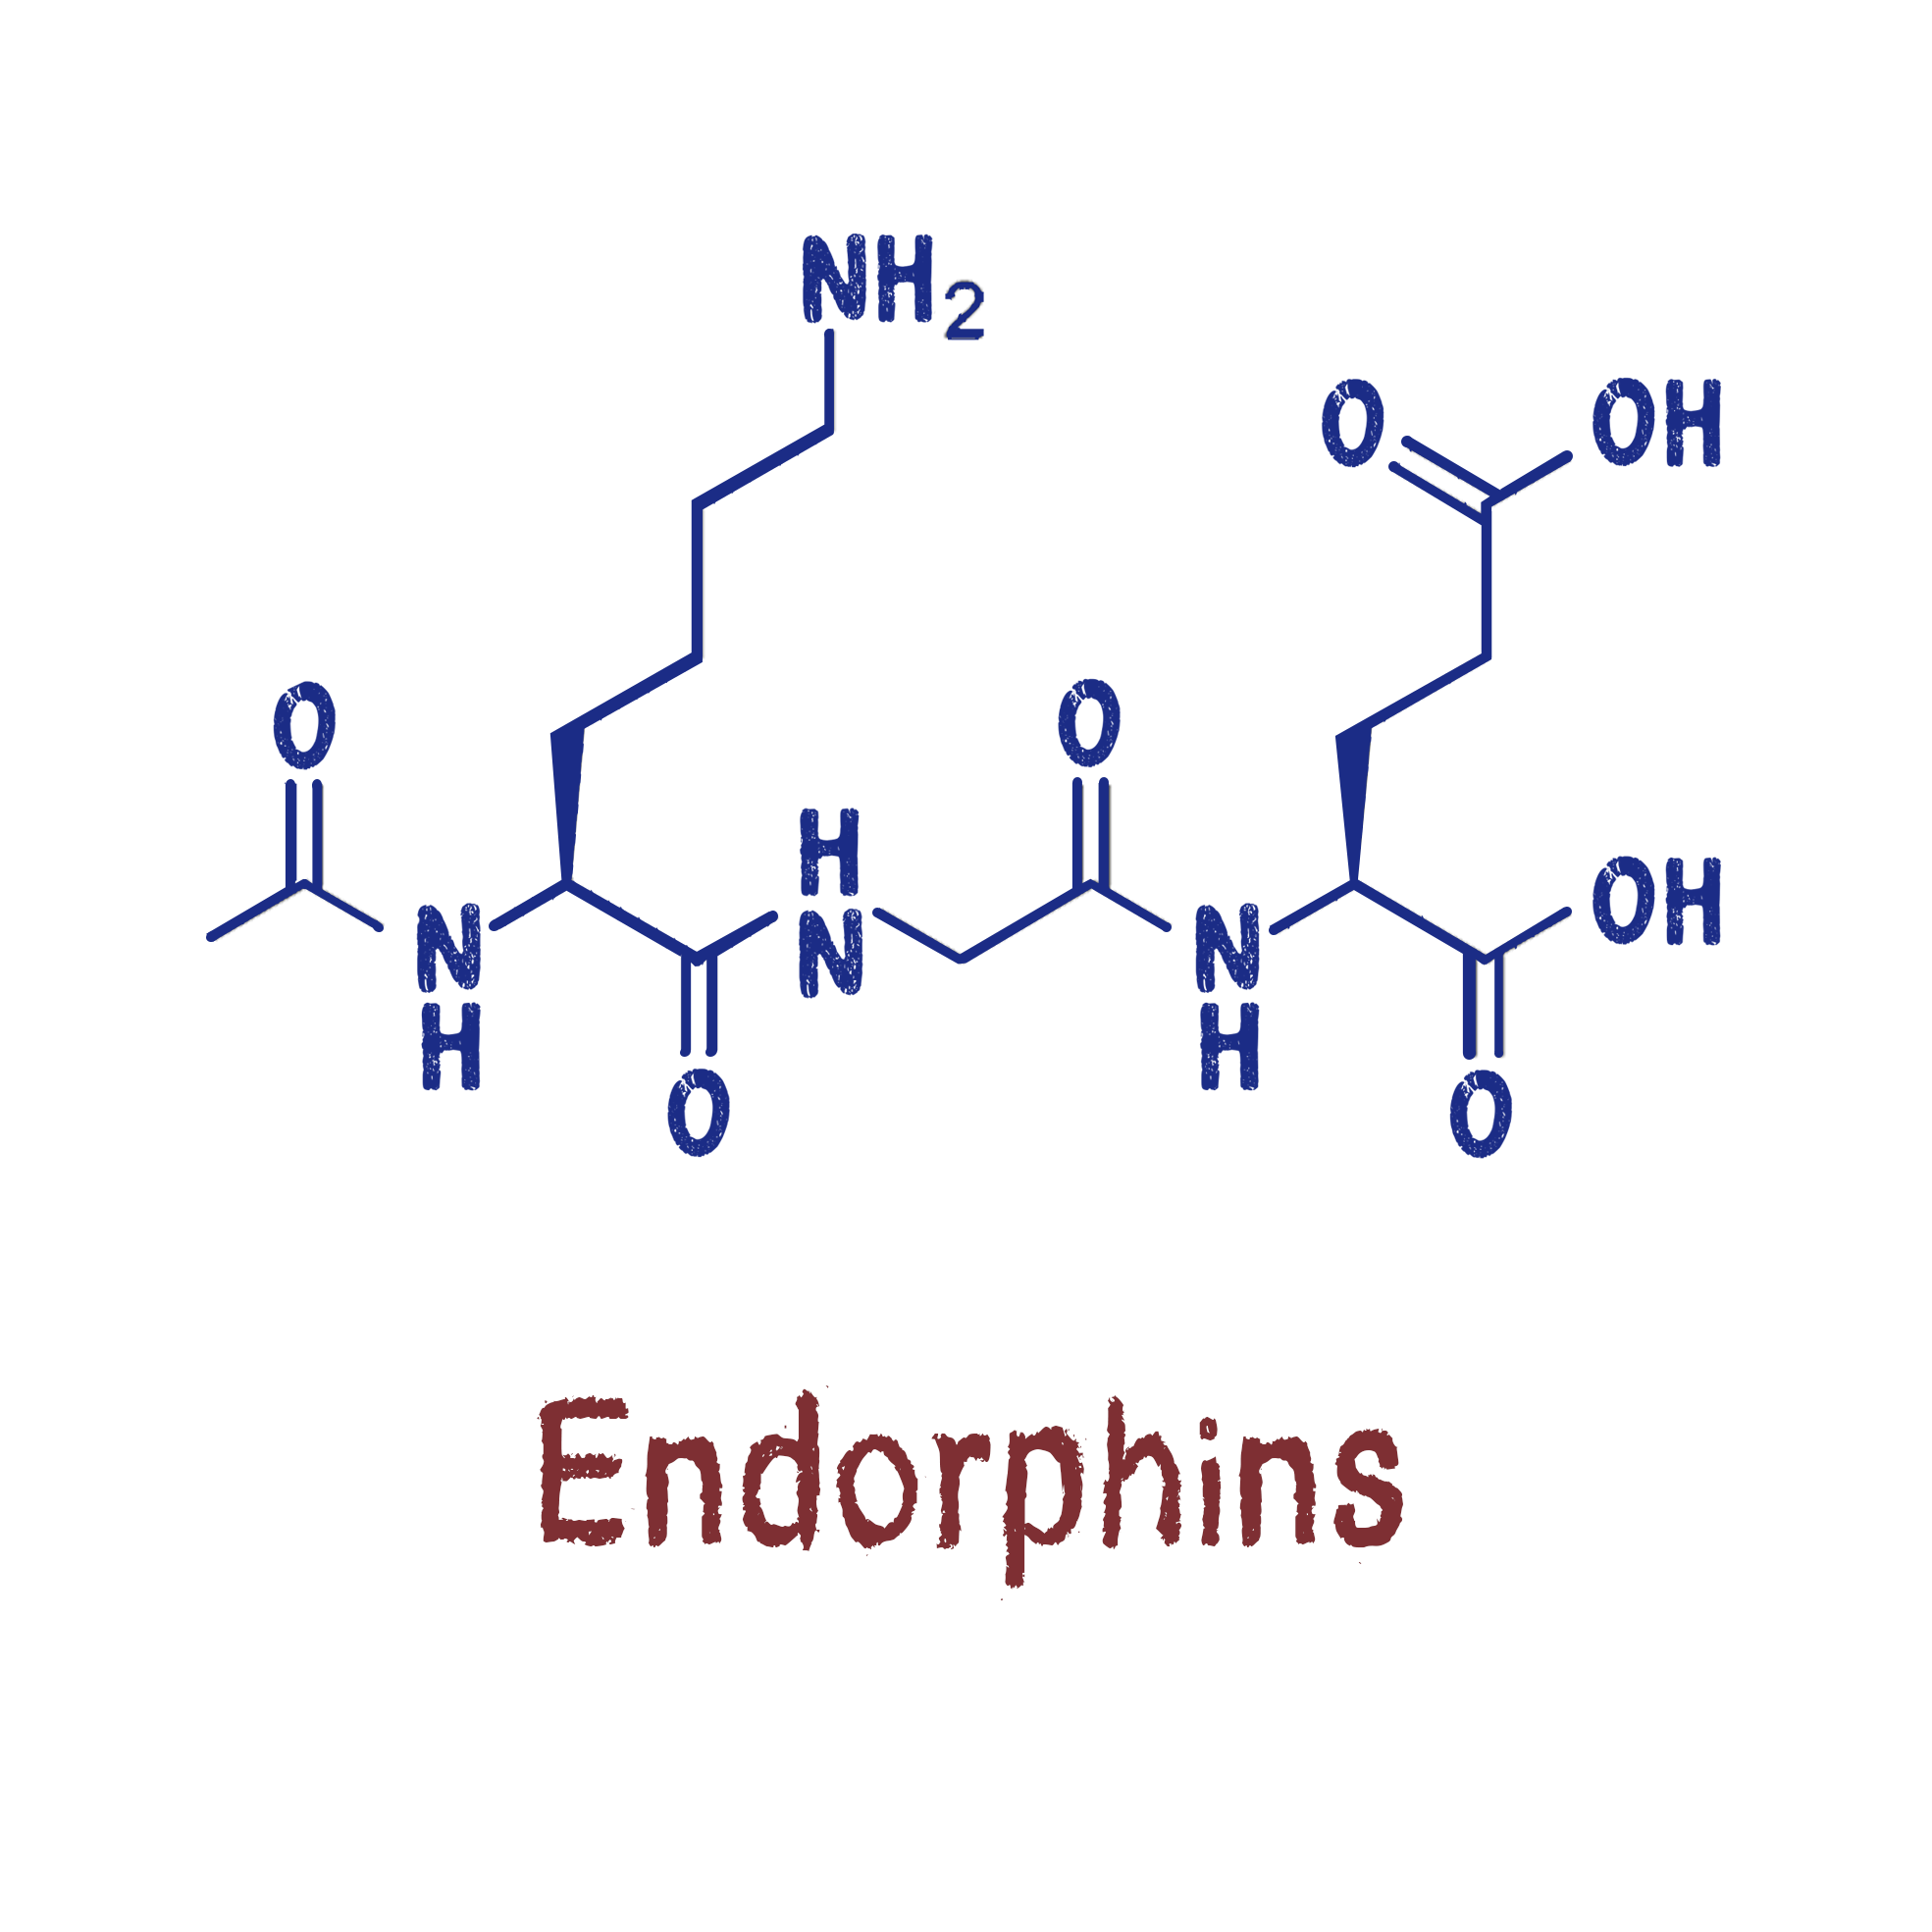 Эндорфин 6